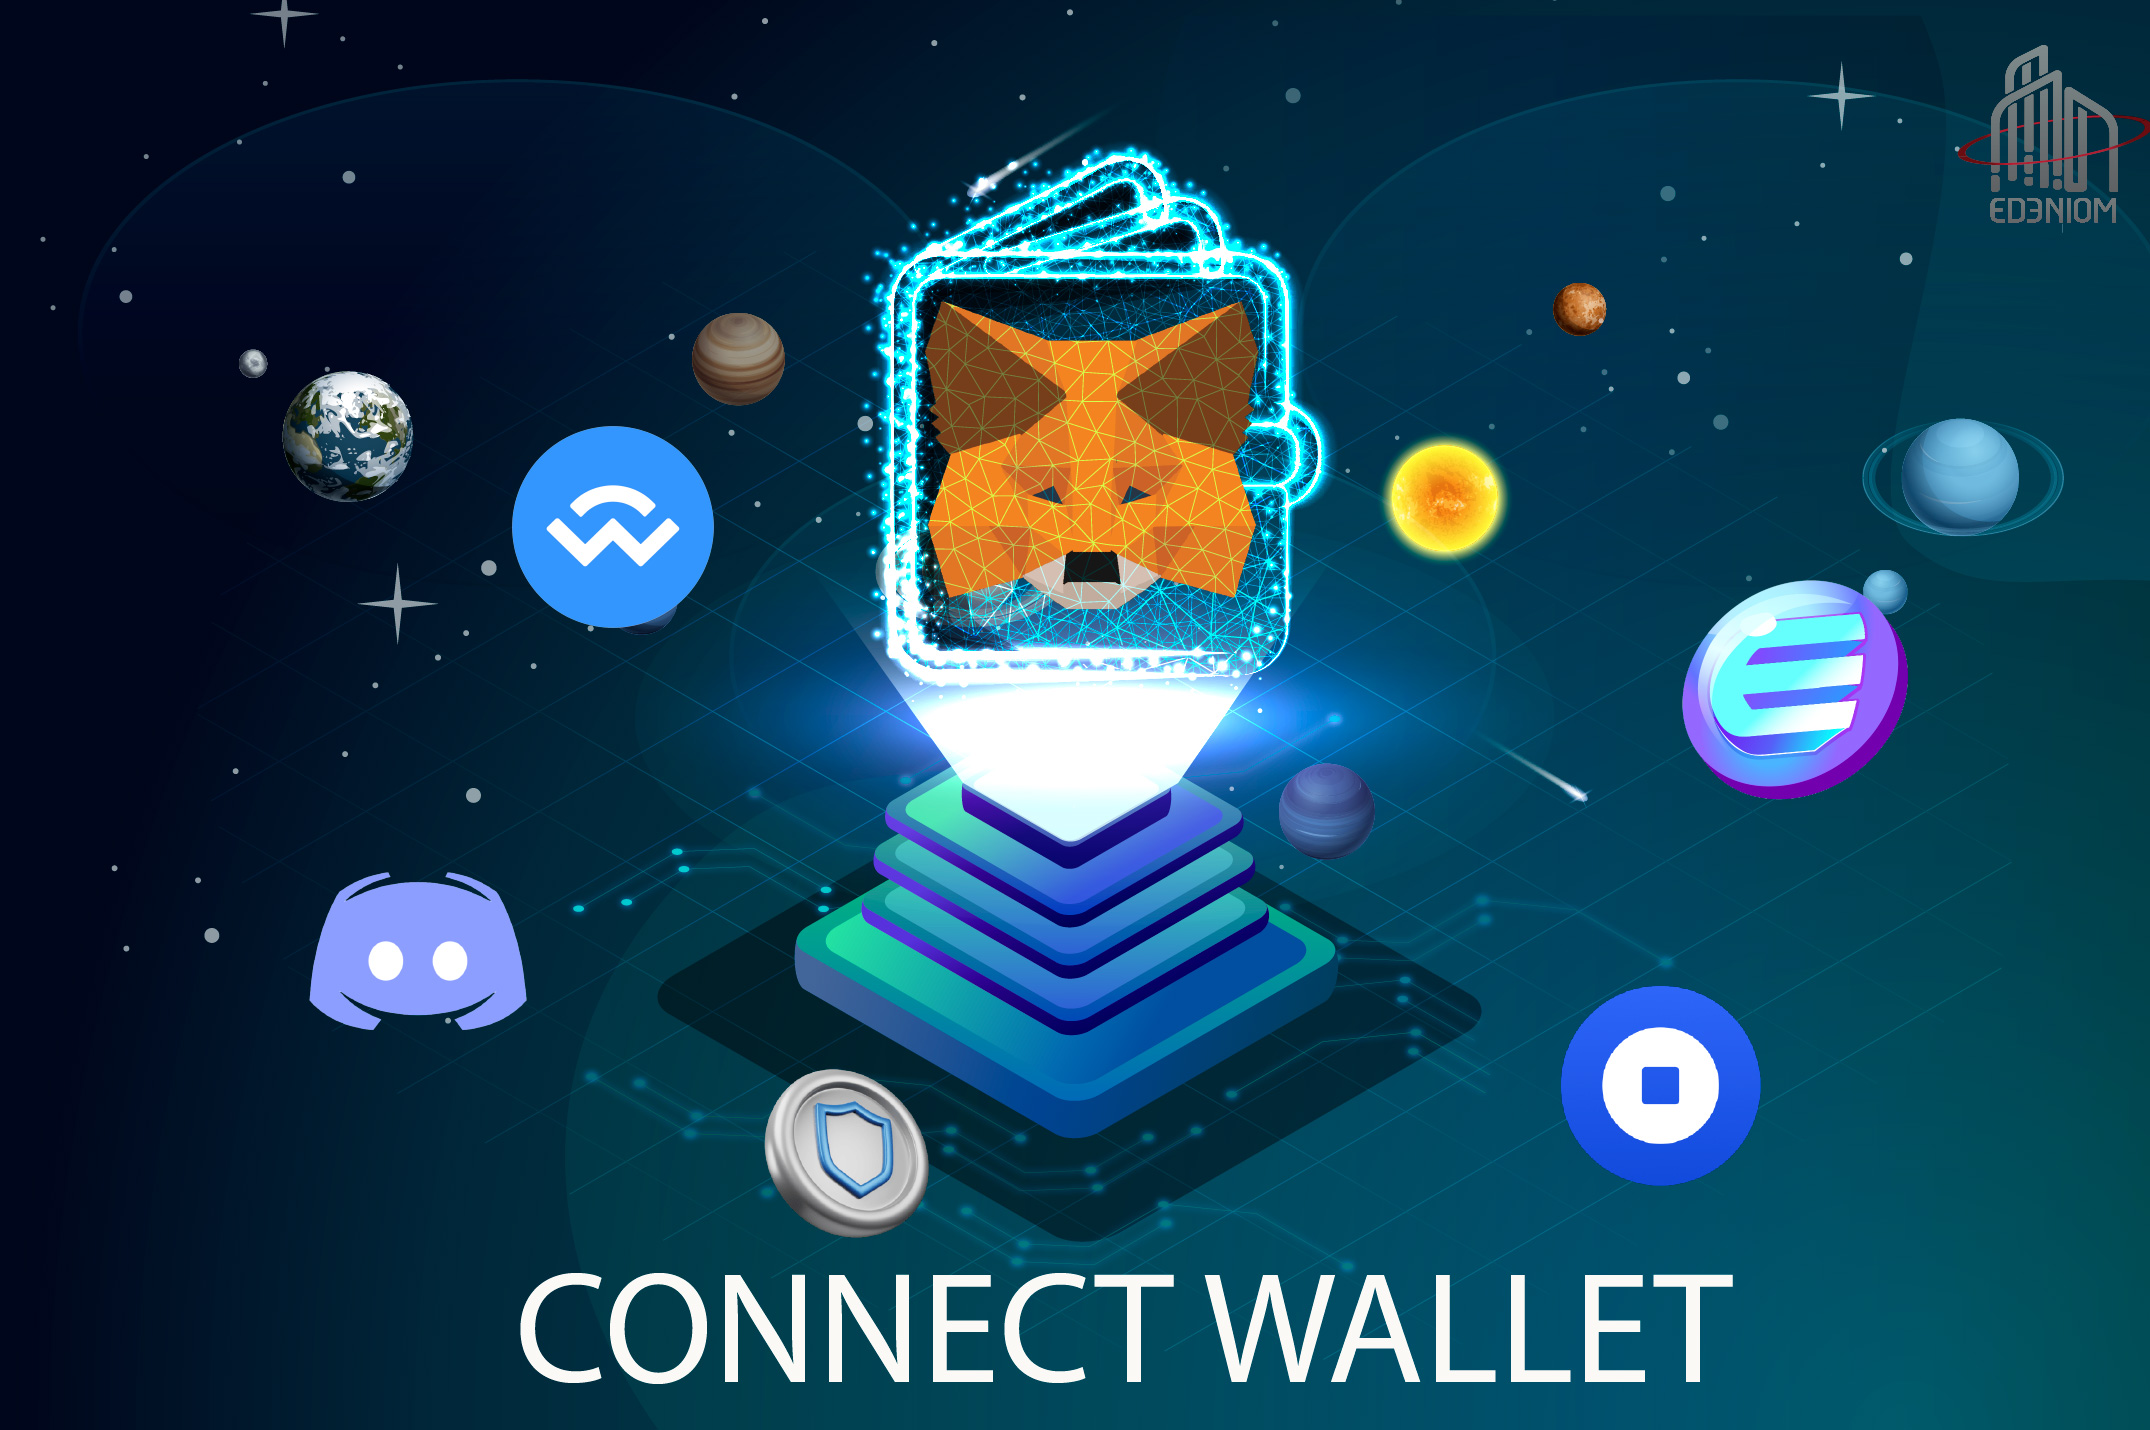 edeniom connect wallet